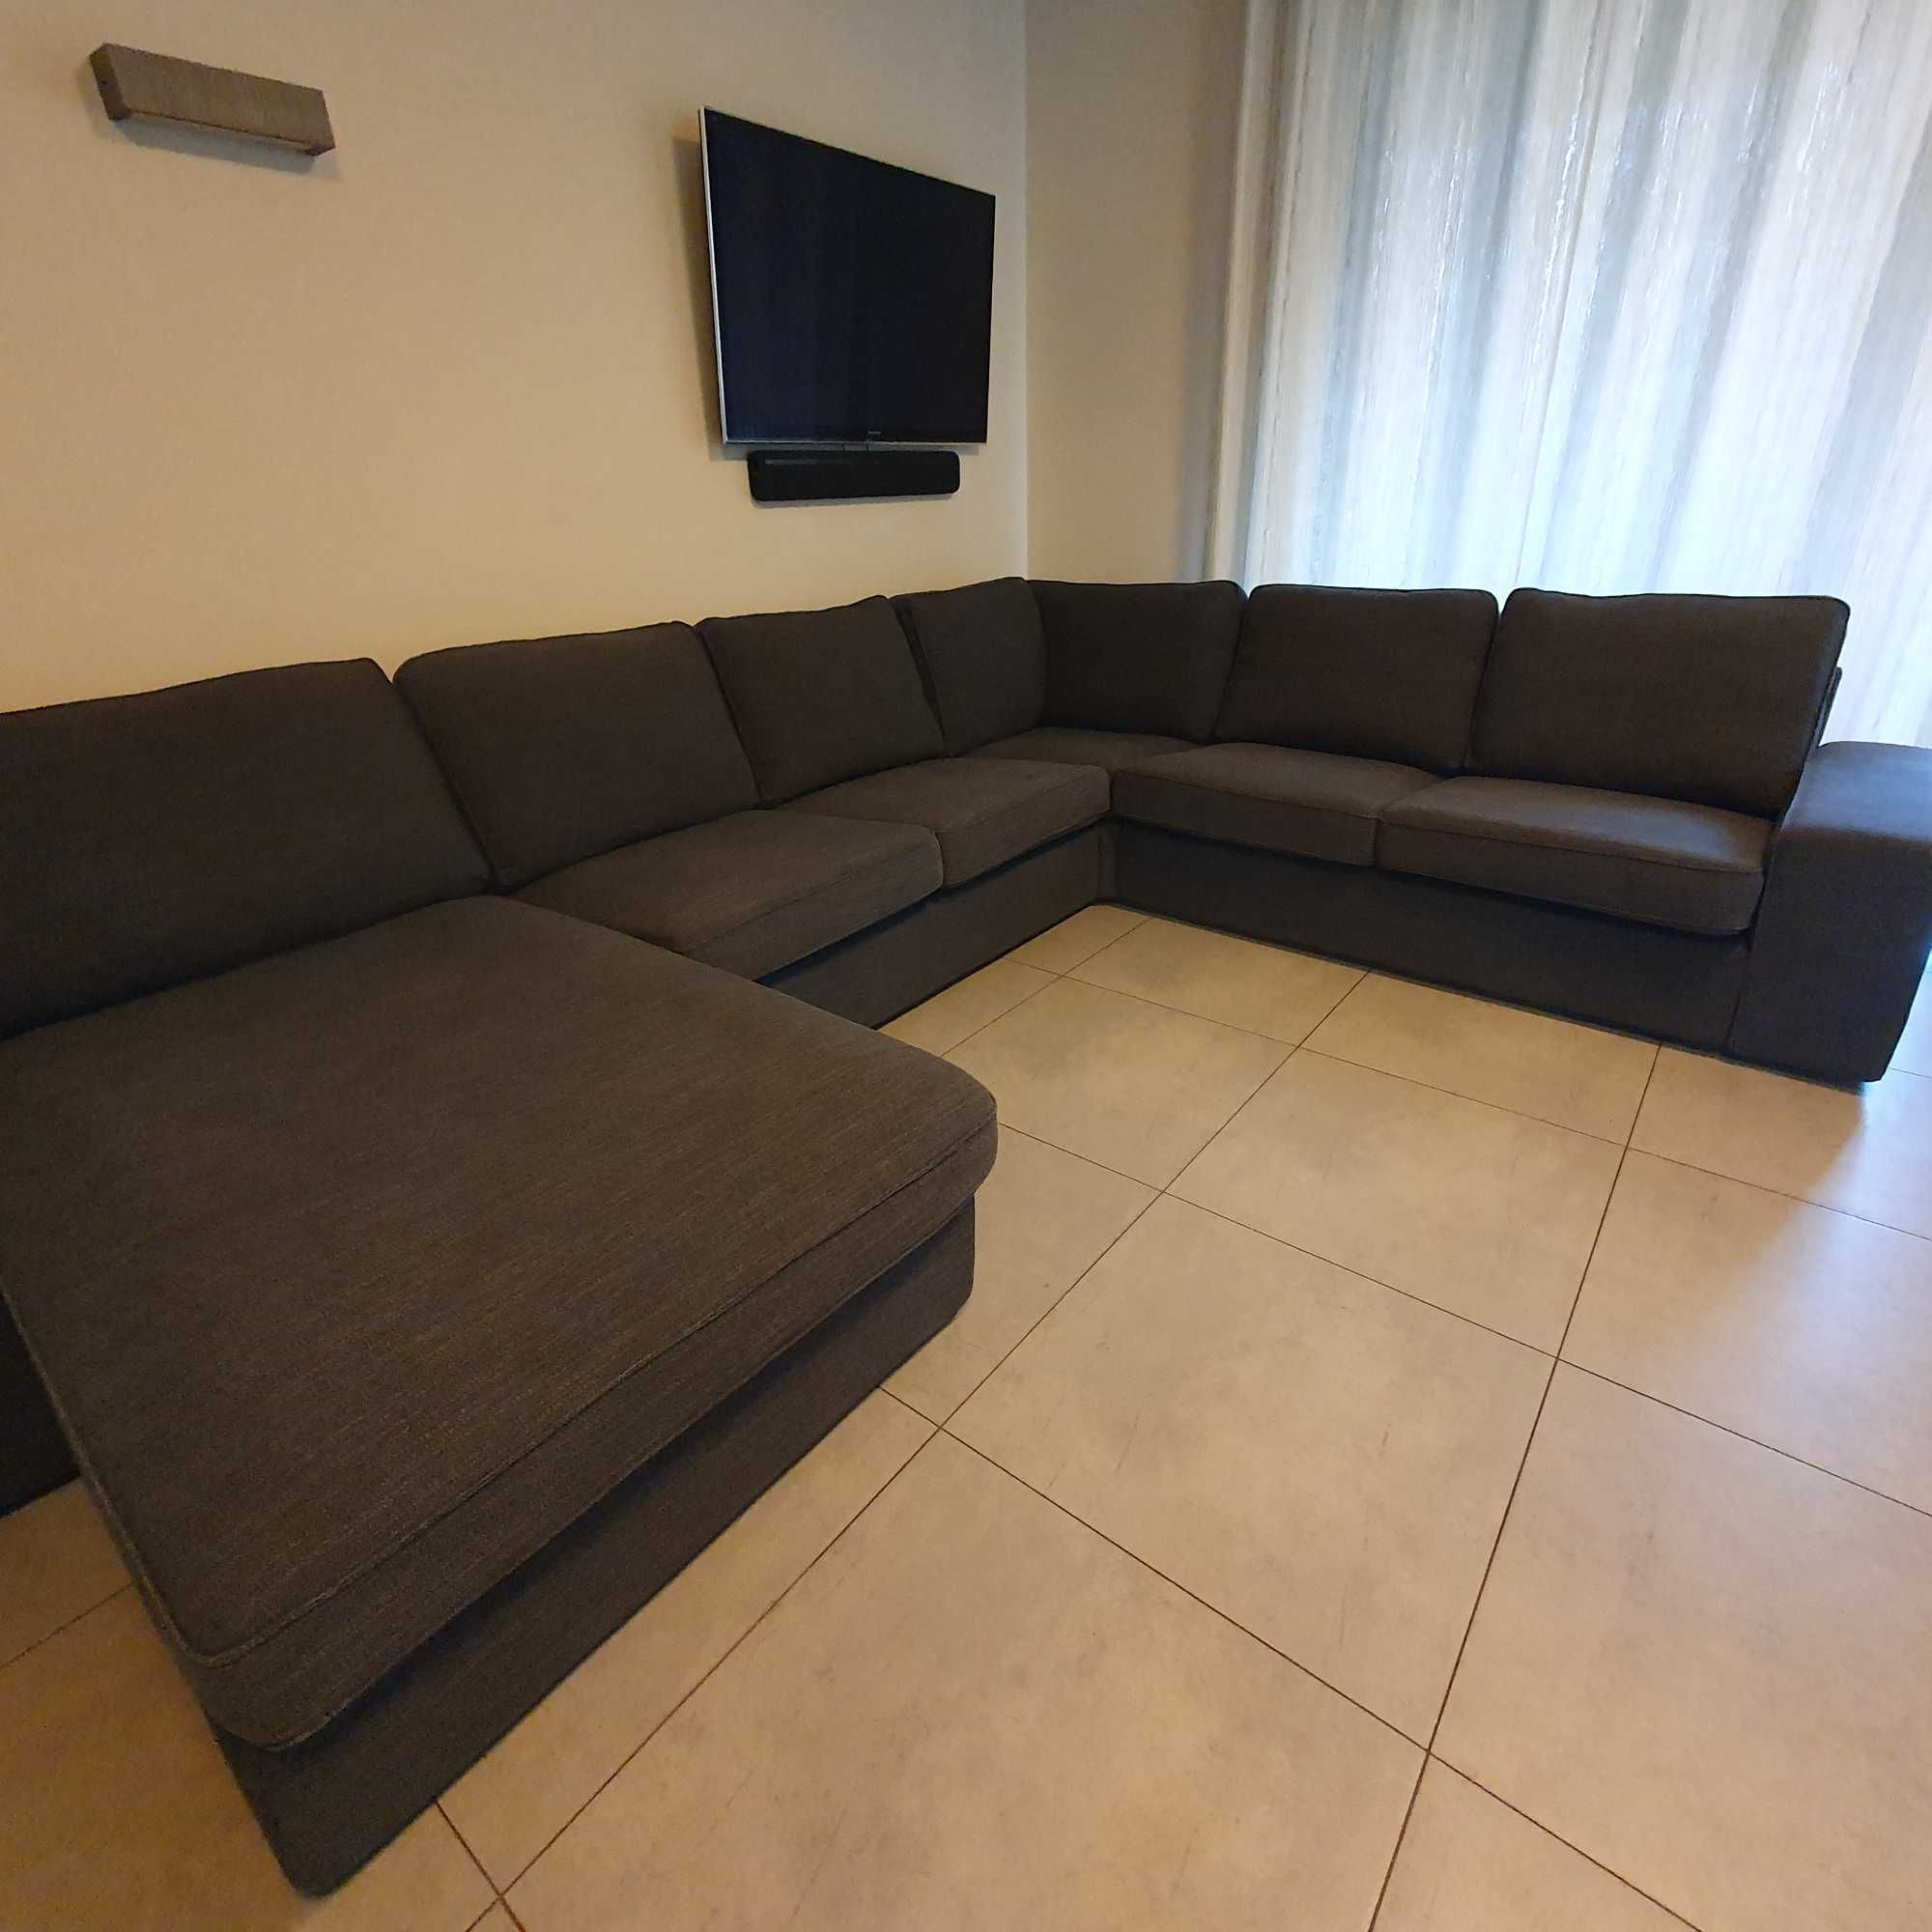 Narożna sofa z szezlągiem antracyt, Ikea_KIVIK  - rezerwacja